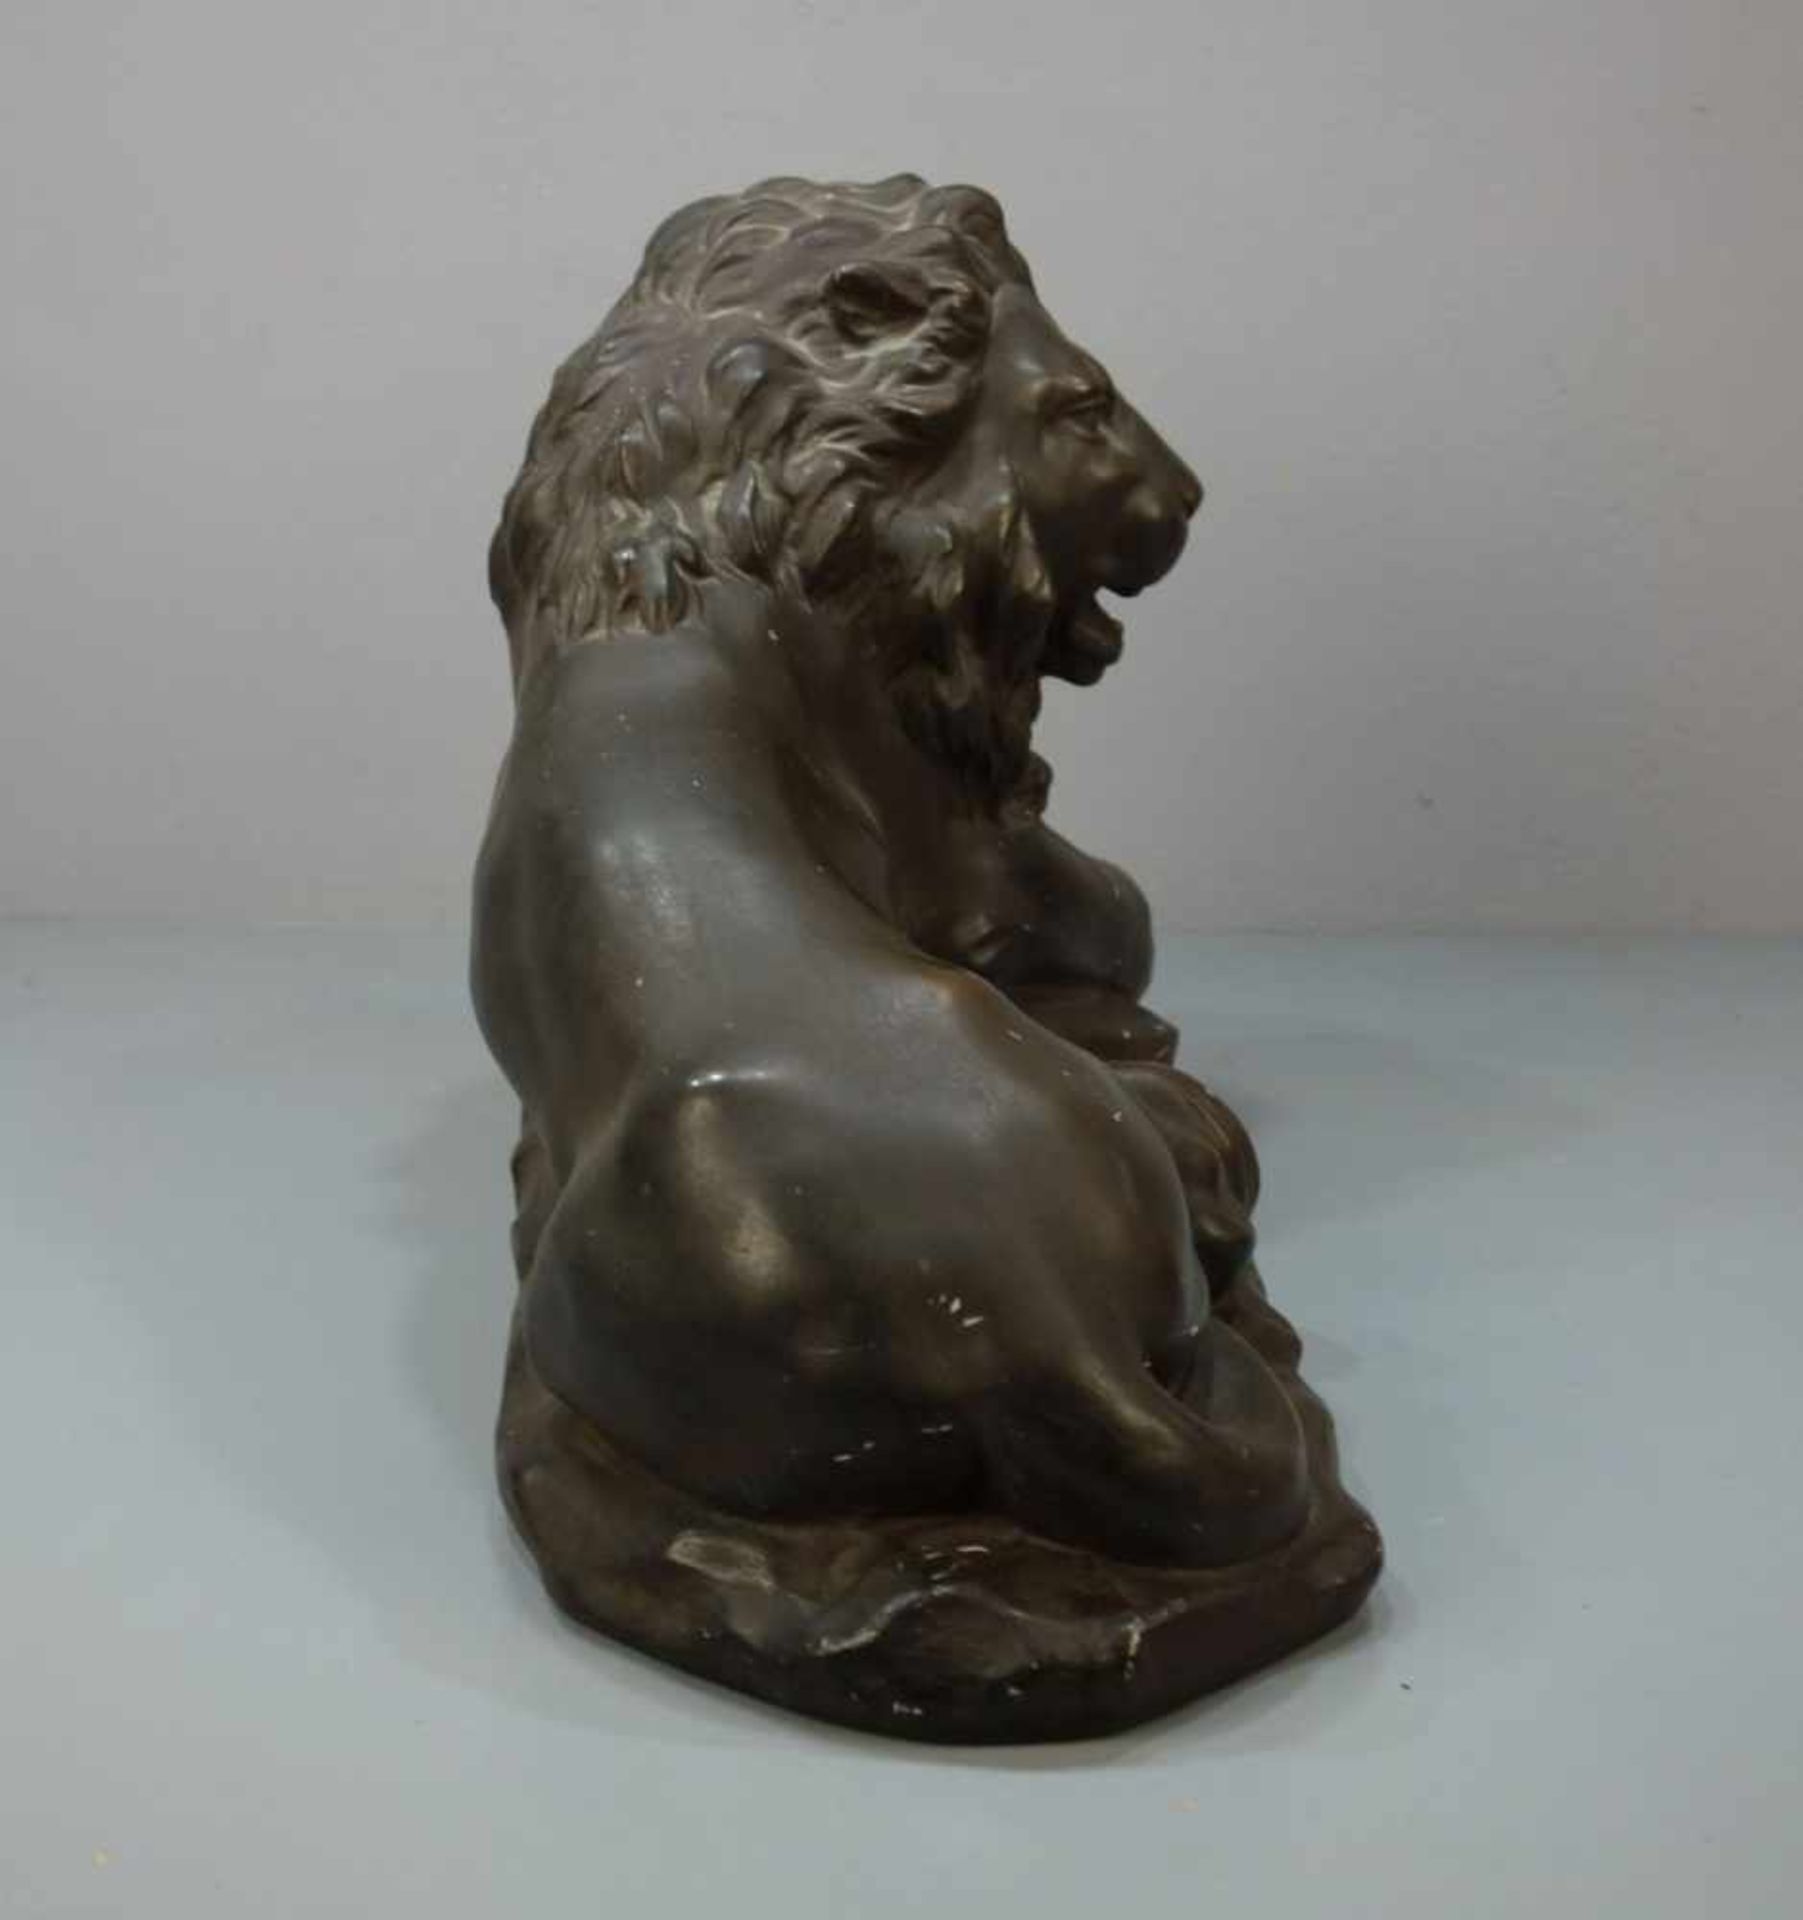 MOECKEL, P. E. (Bildhauer / Animalier des 20. Jh.), Skulptur: "Liegender Löwe", bronzierte Stukko- - Image 5 of 5